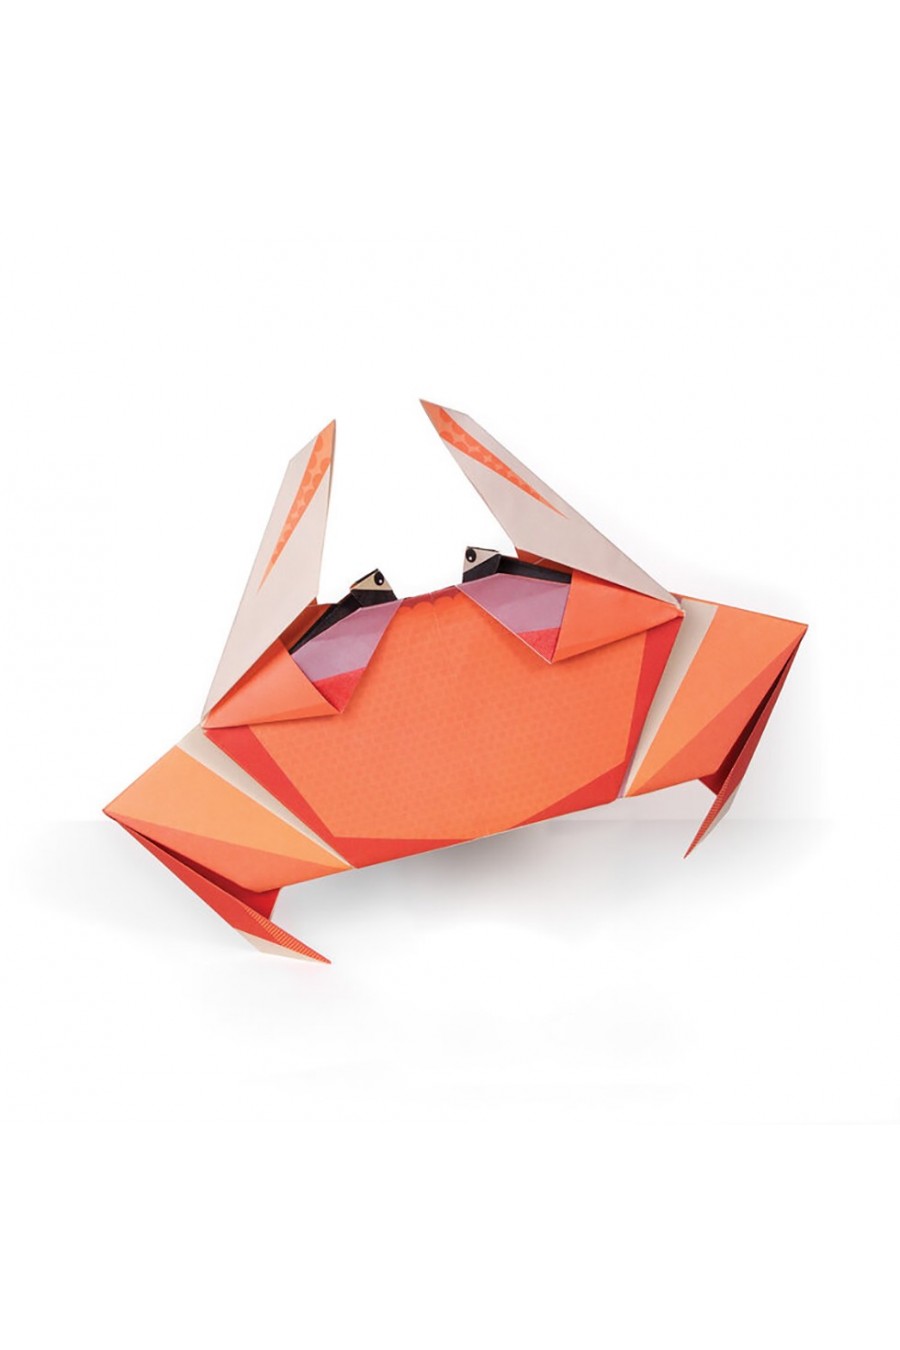 Cette bouteille en origami pliable et réutilisable est une solution géniale  pour réduire ses déchets